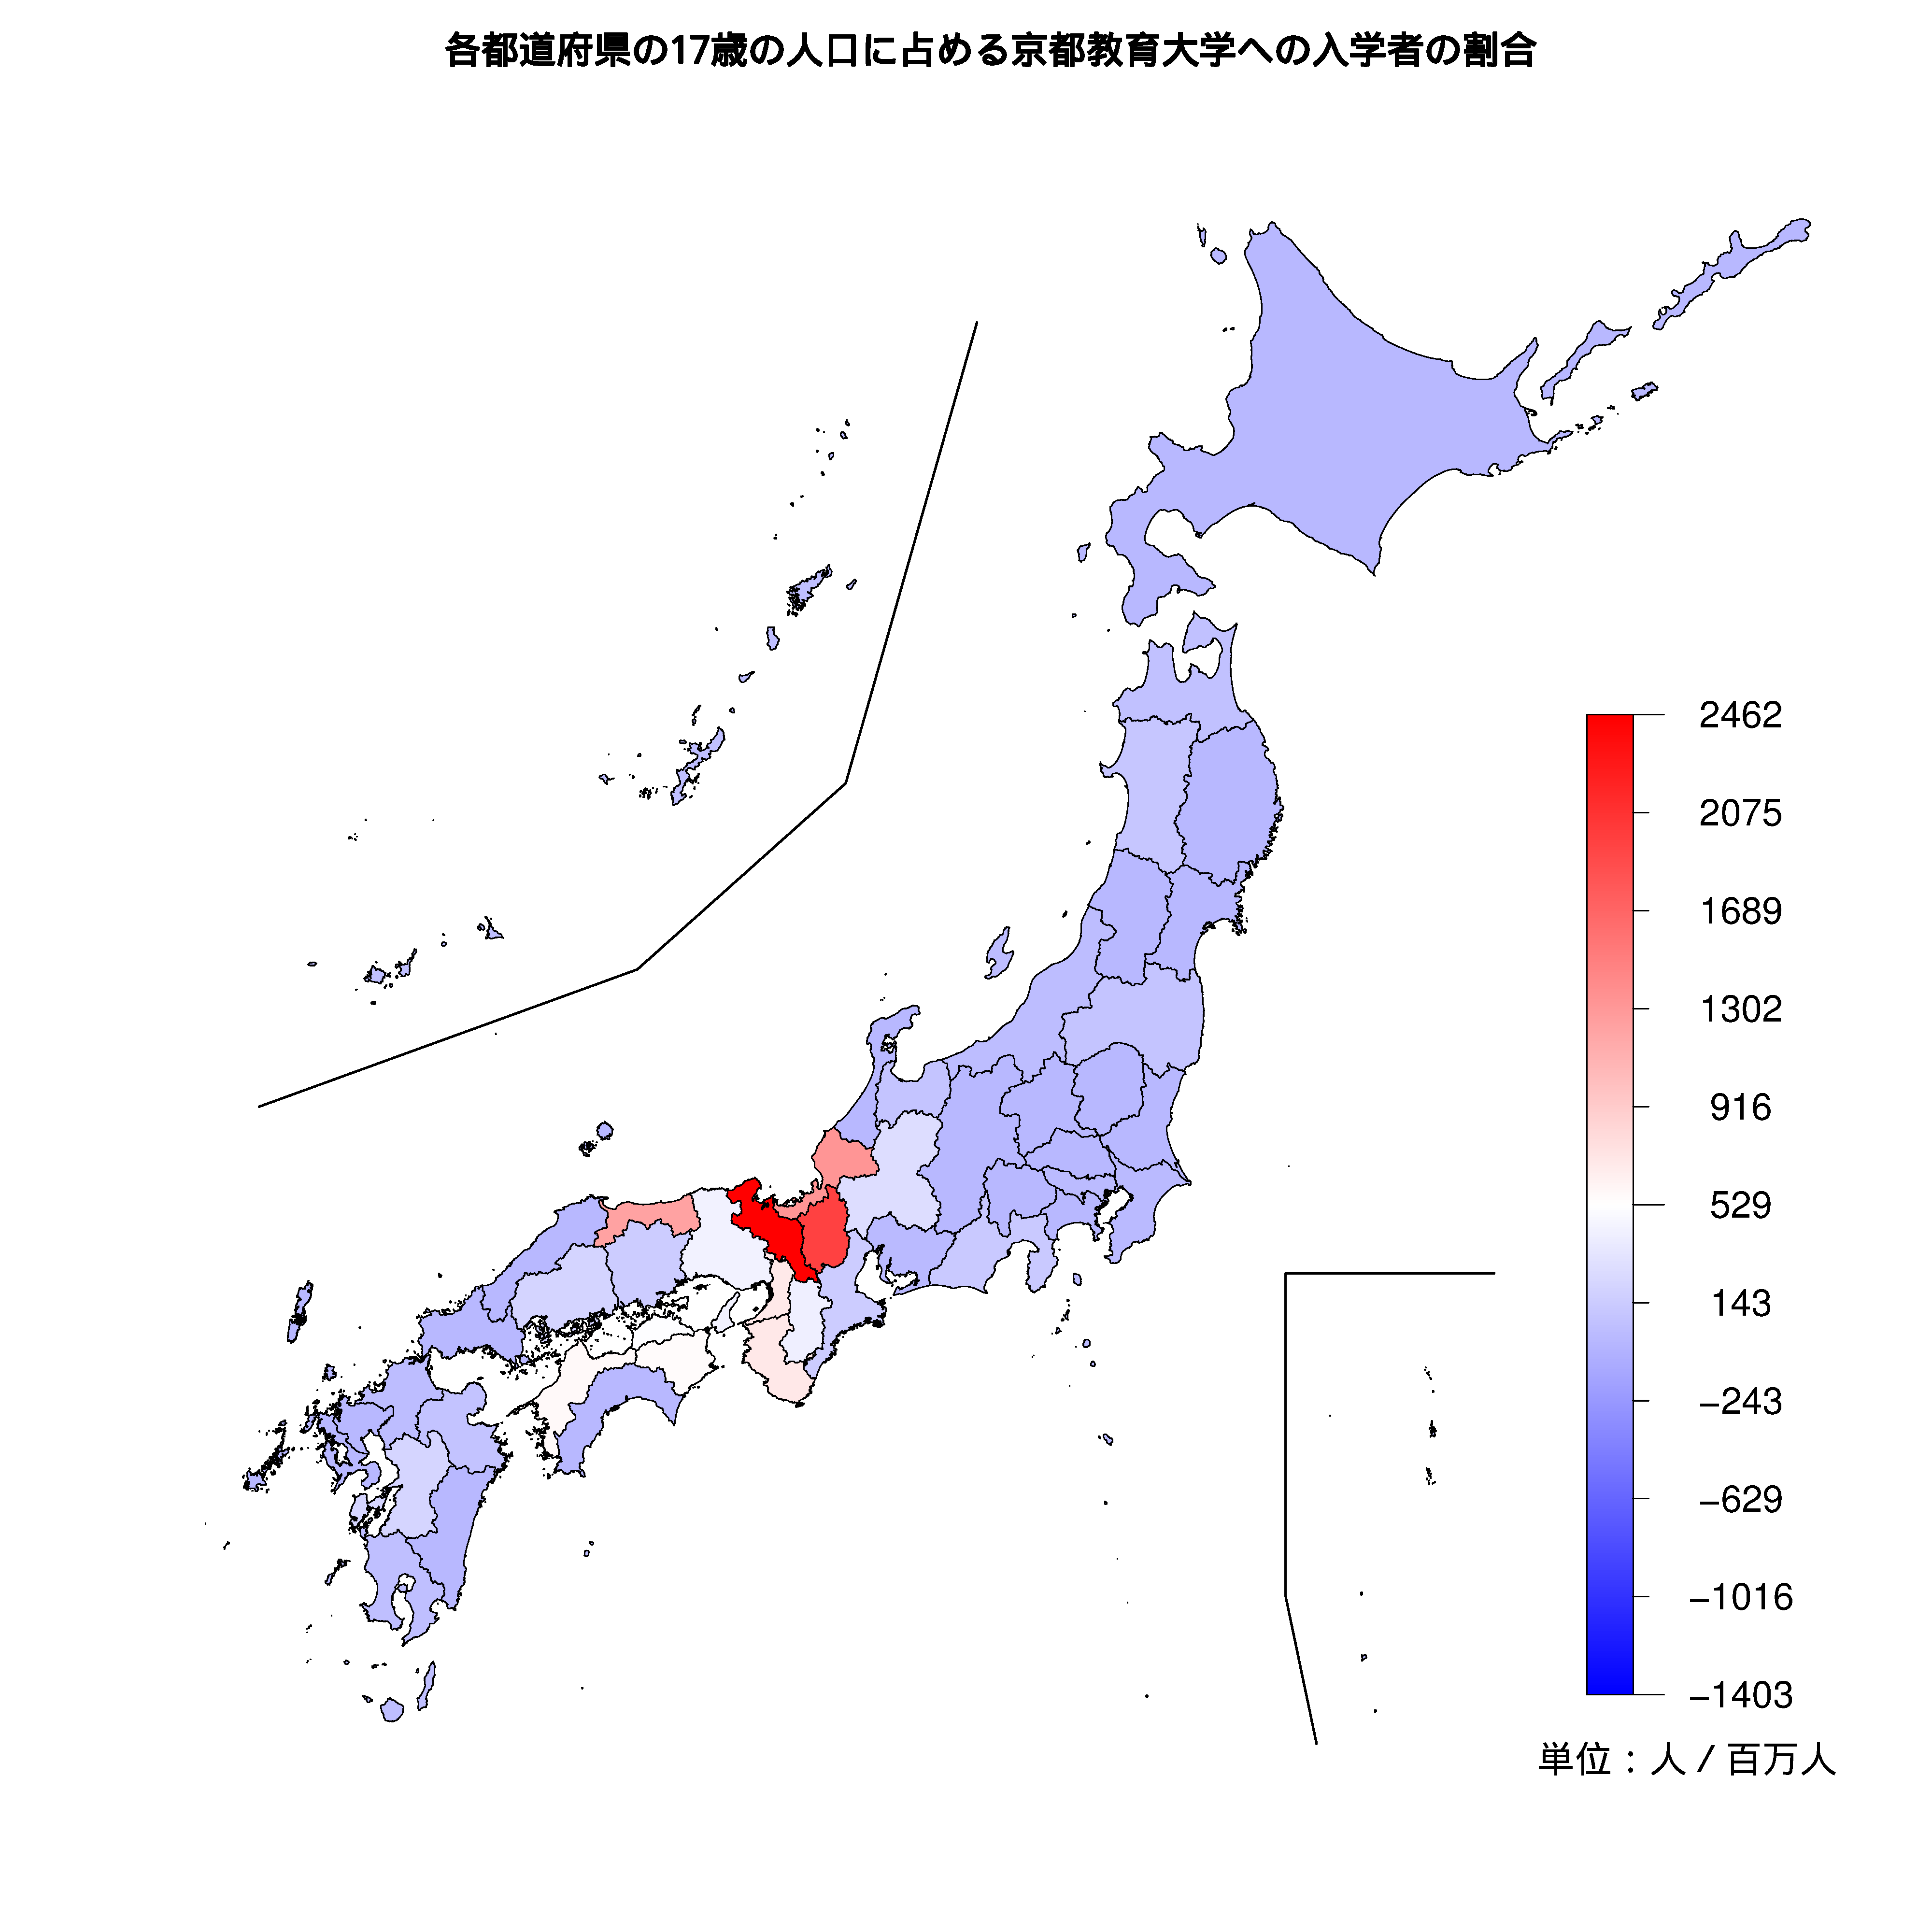 京都教育大学への入学者が多い都道府県の色分け地図